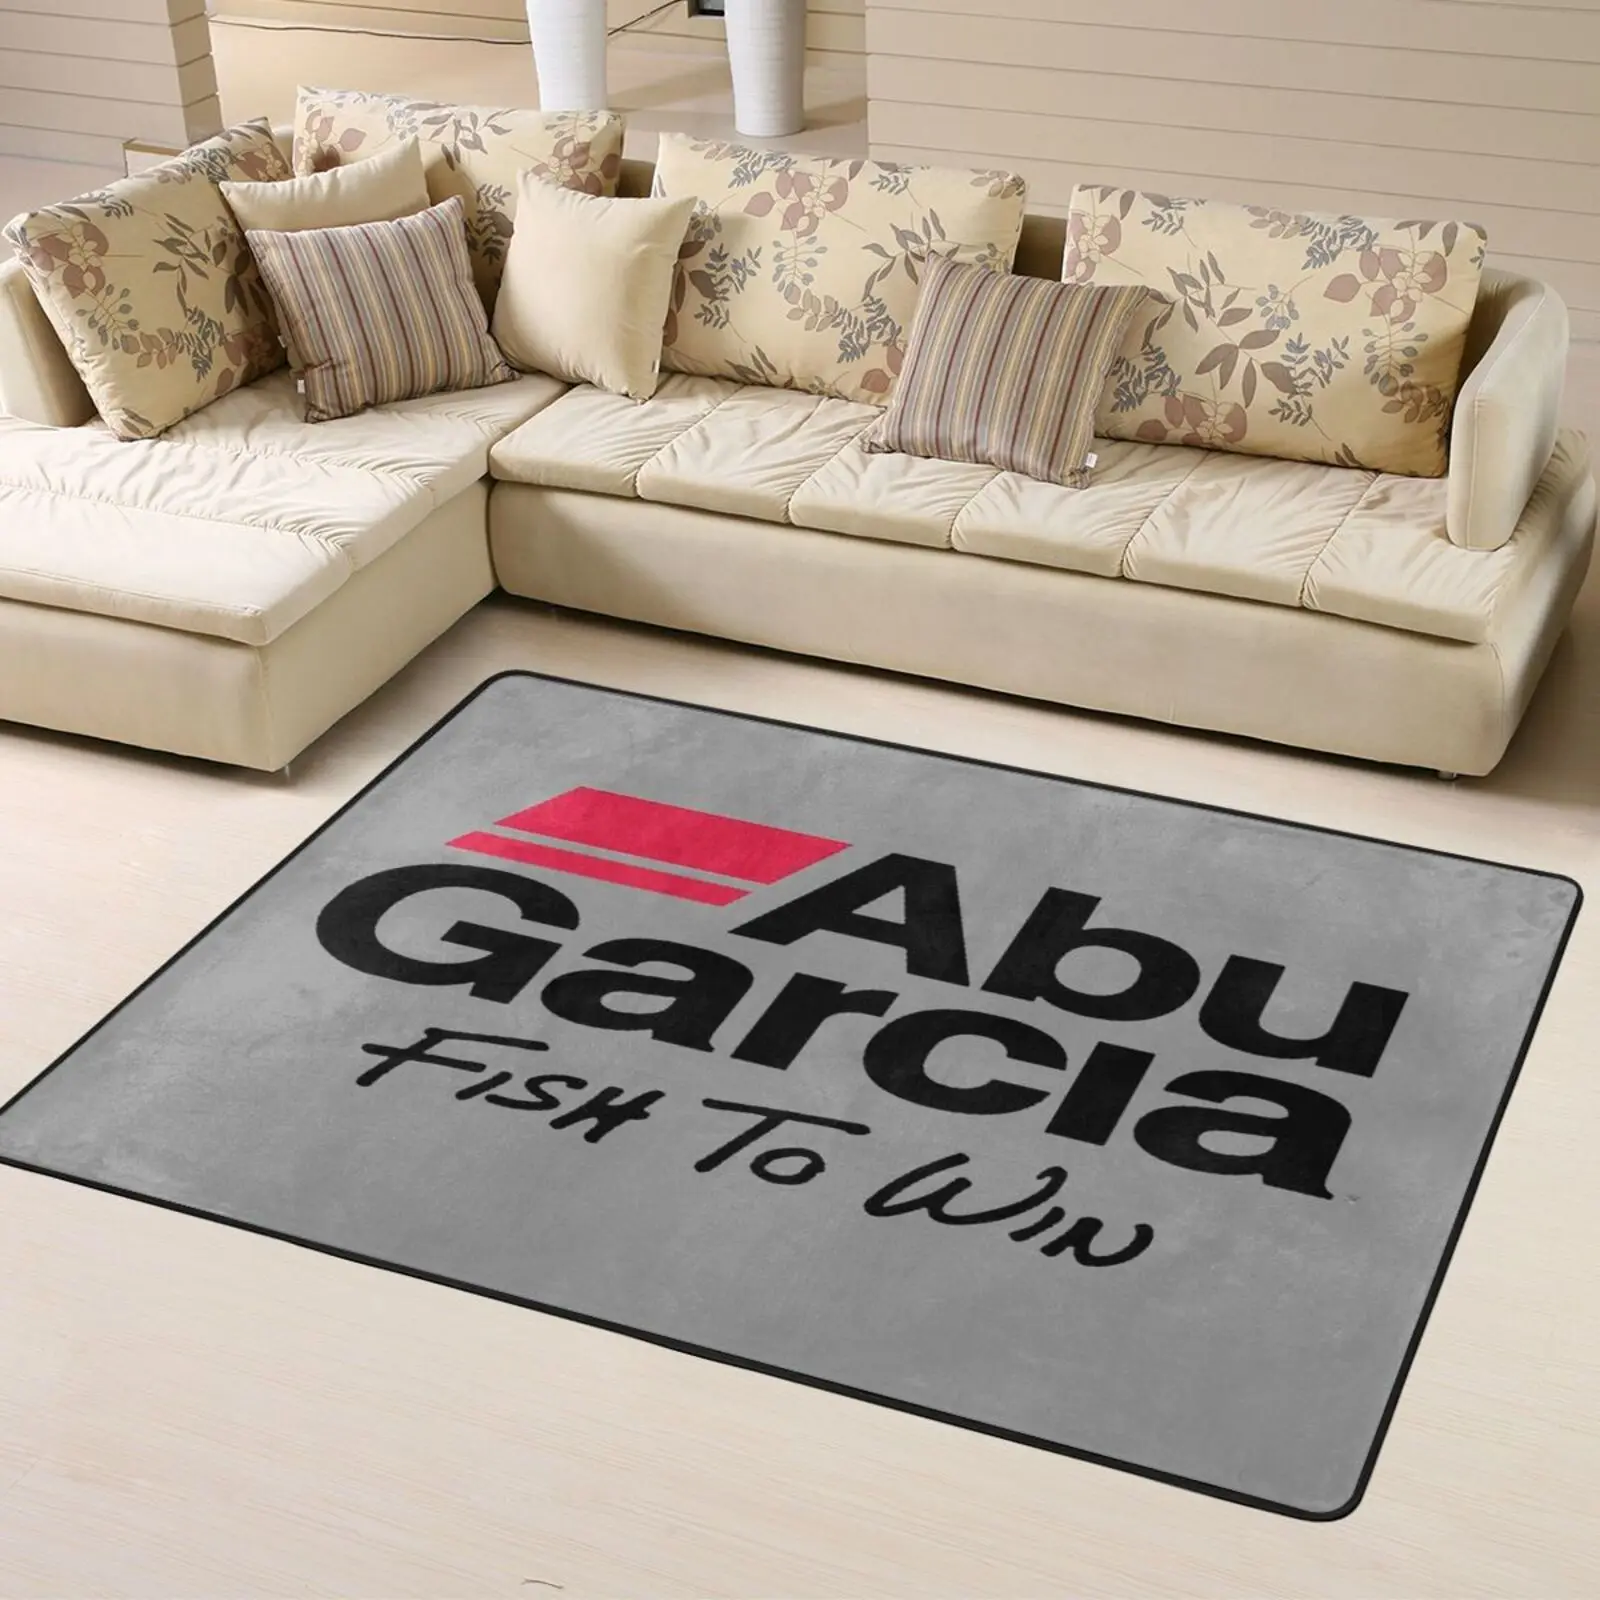 

Abu Garcia 63 ковровые шорты-боксеры, мужские ковры для гостиной, ковры из полиэстера для парней, ковровые покрытия для гостиной, полиэстер с прин...